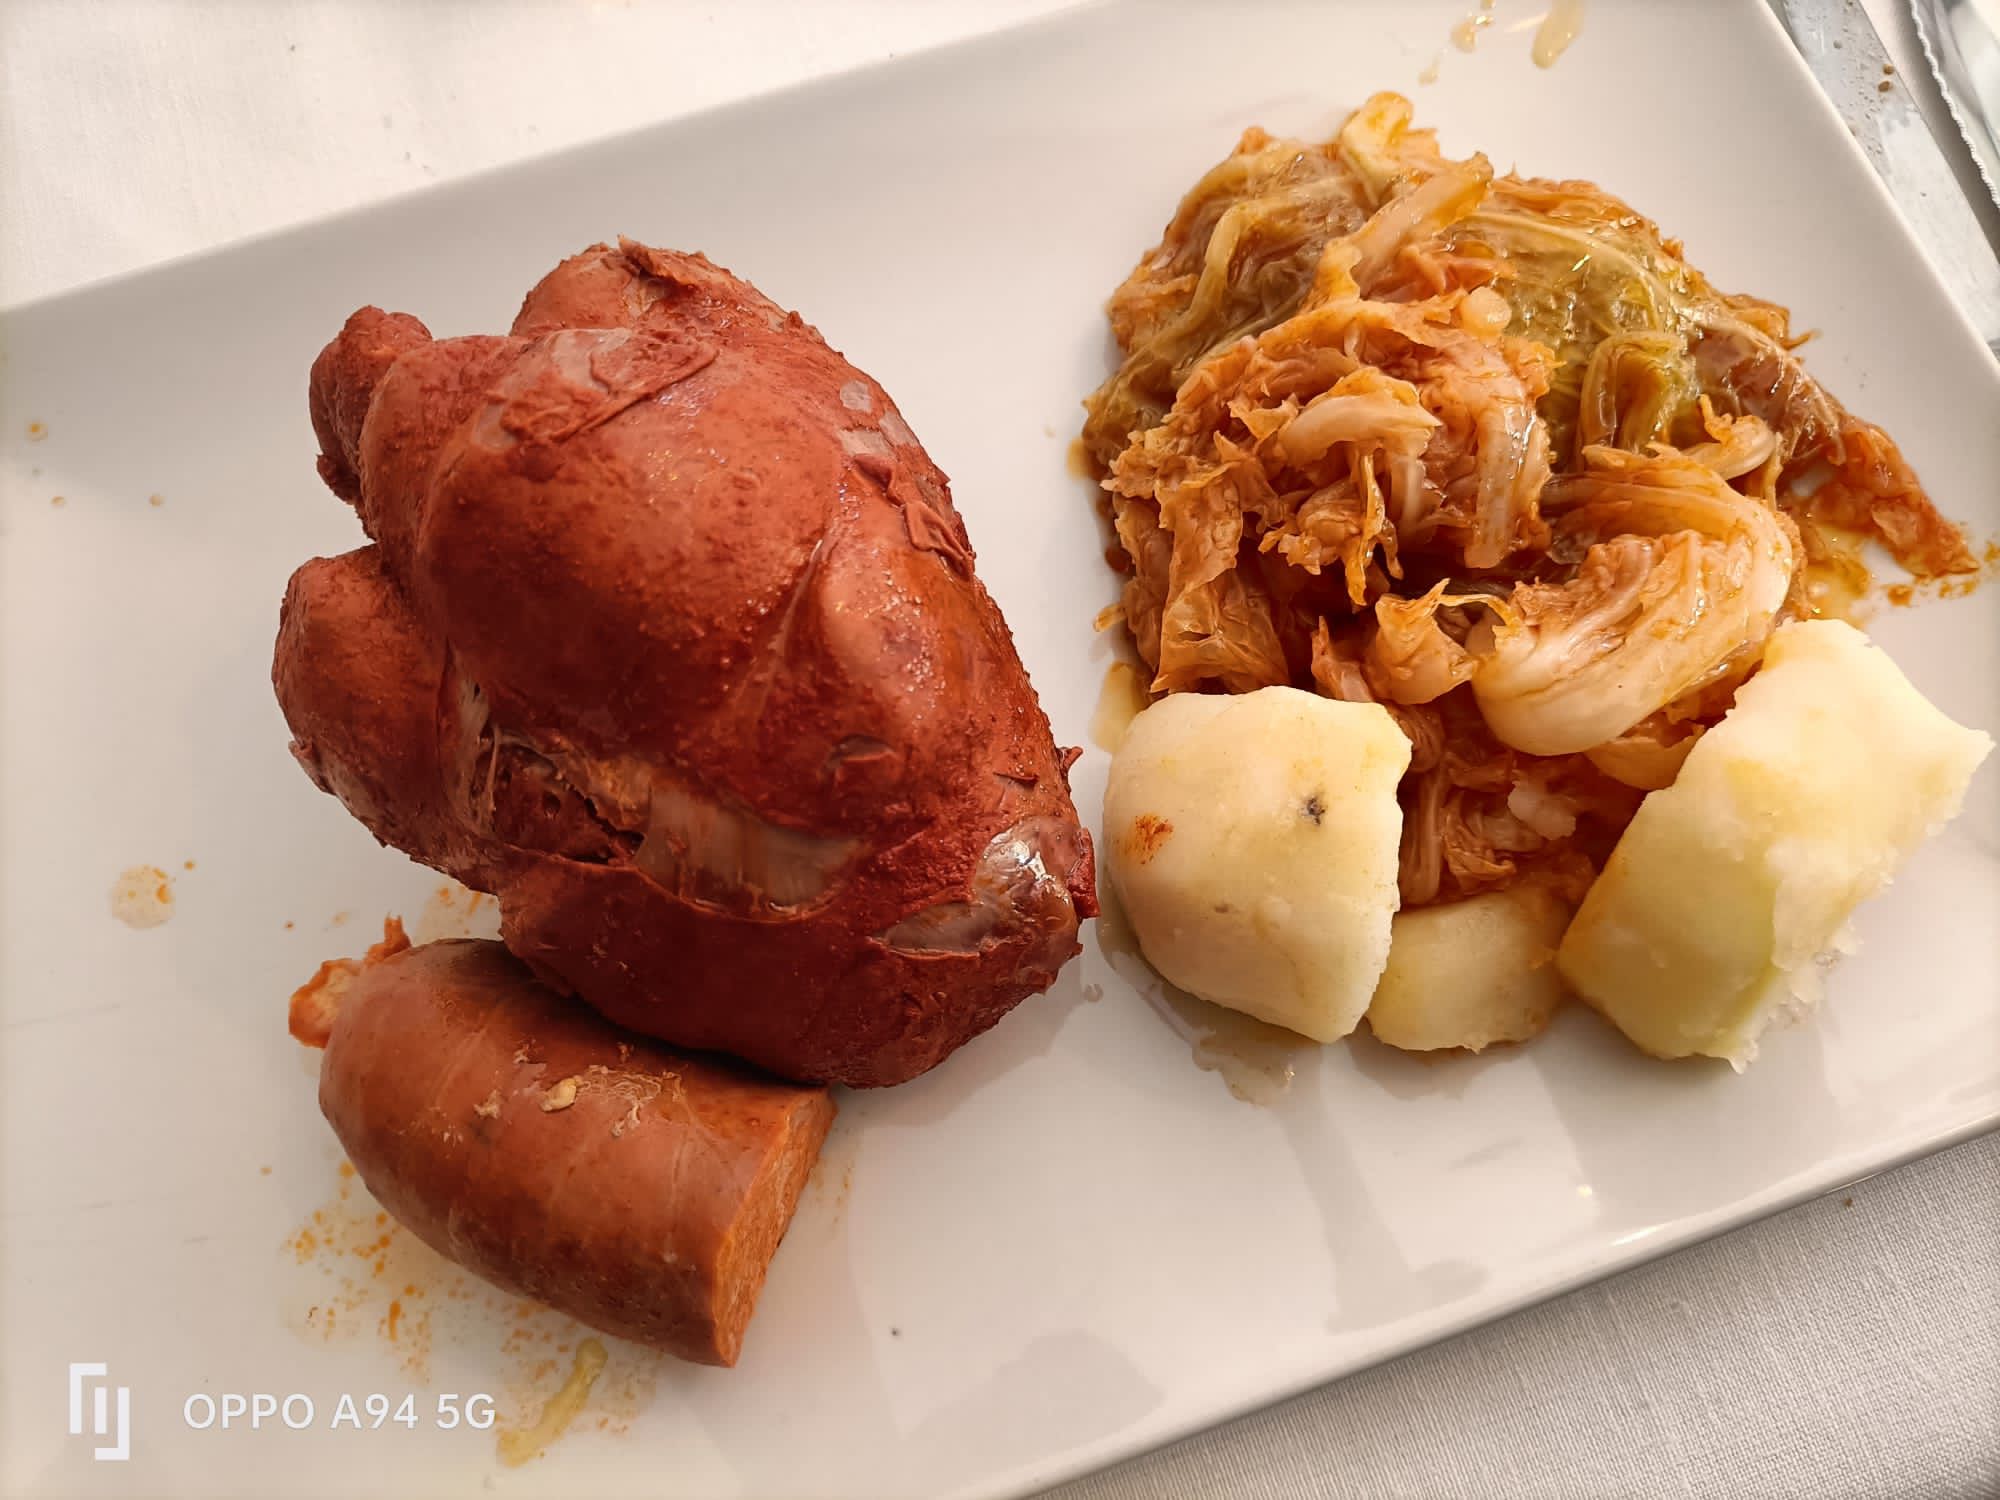 Reseñas gastronómicas: Restaurante Casa Méndez en Villafranca del Bierzo 6